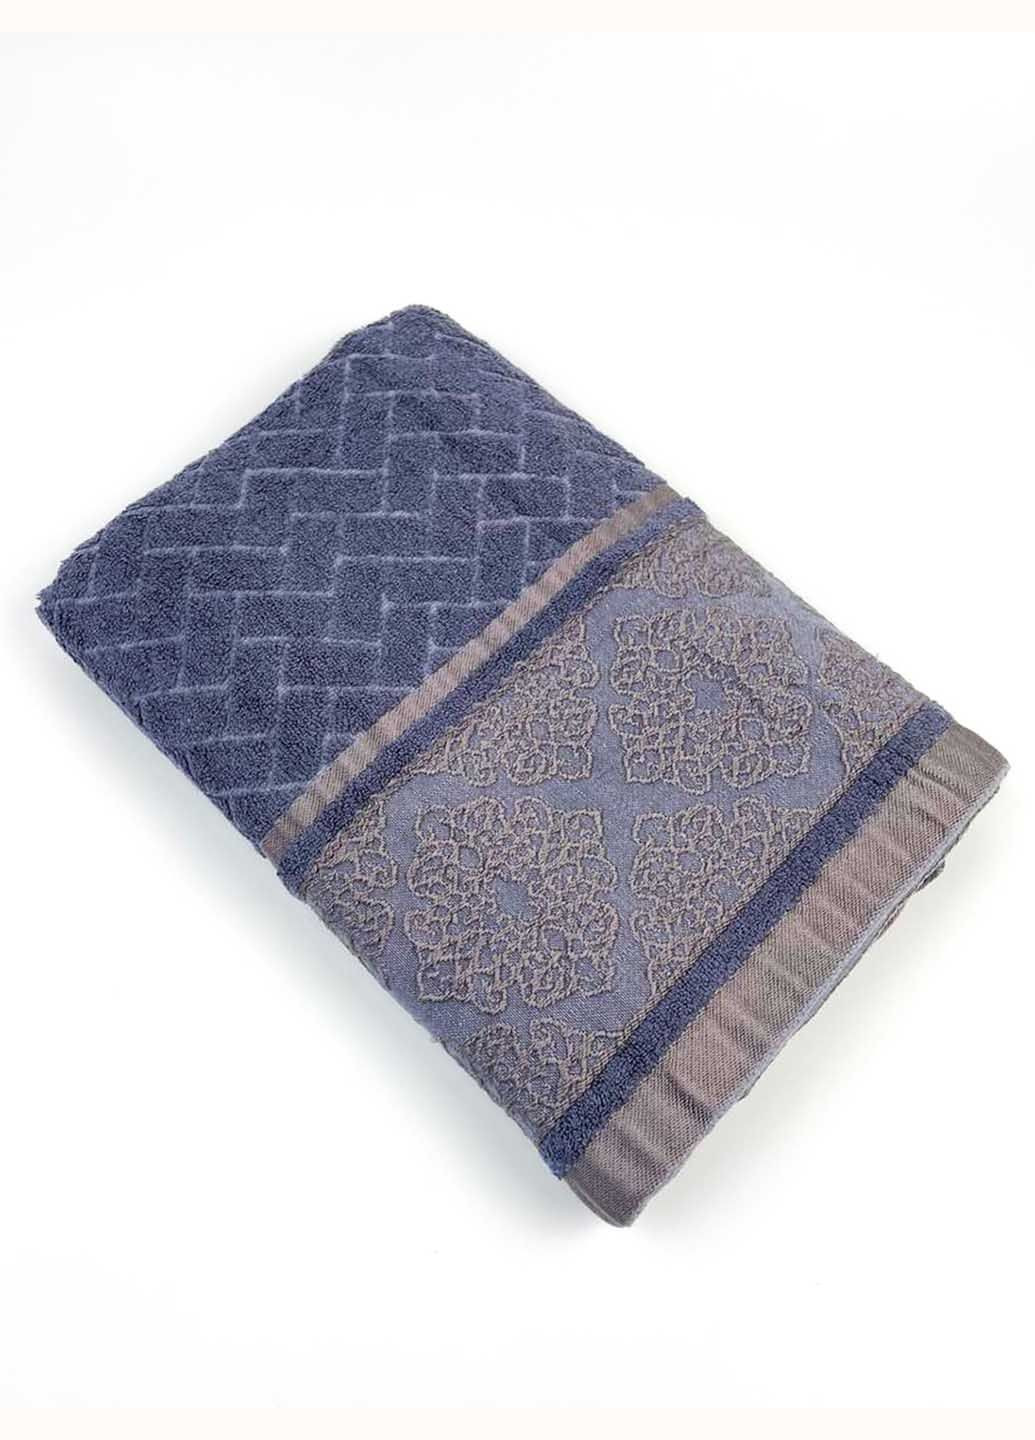 Homedec полотенце лицевое махровое 100х50 см абстрактный синий производство - Турция